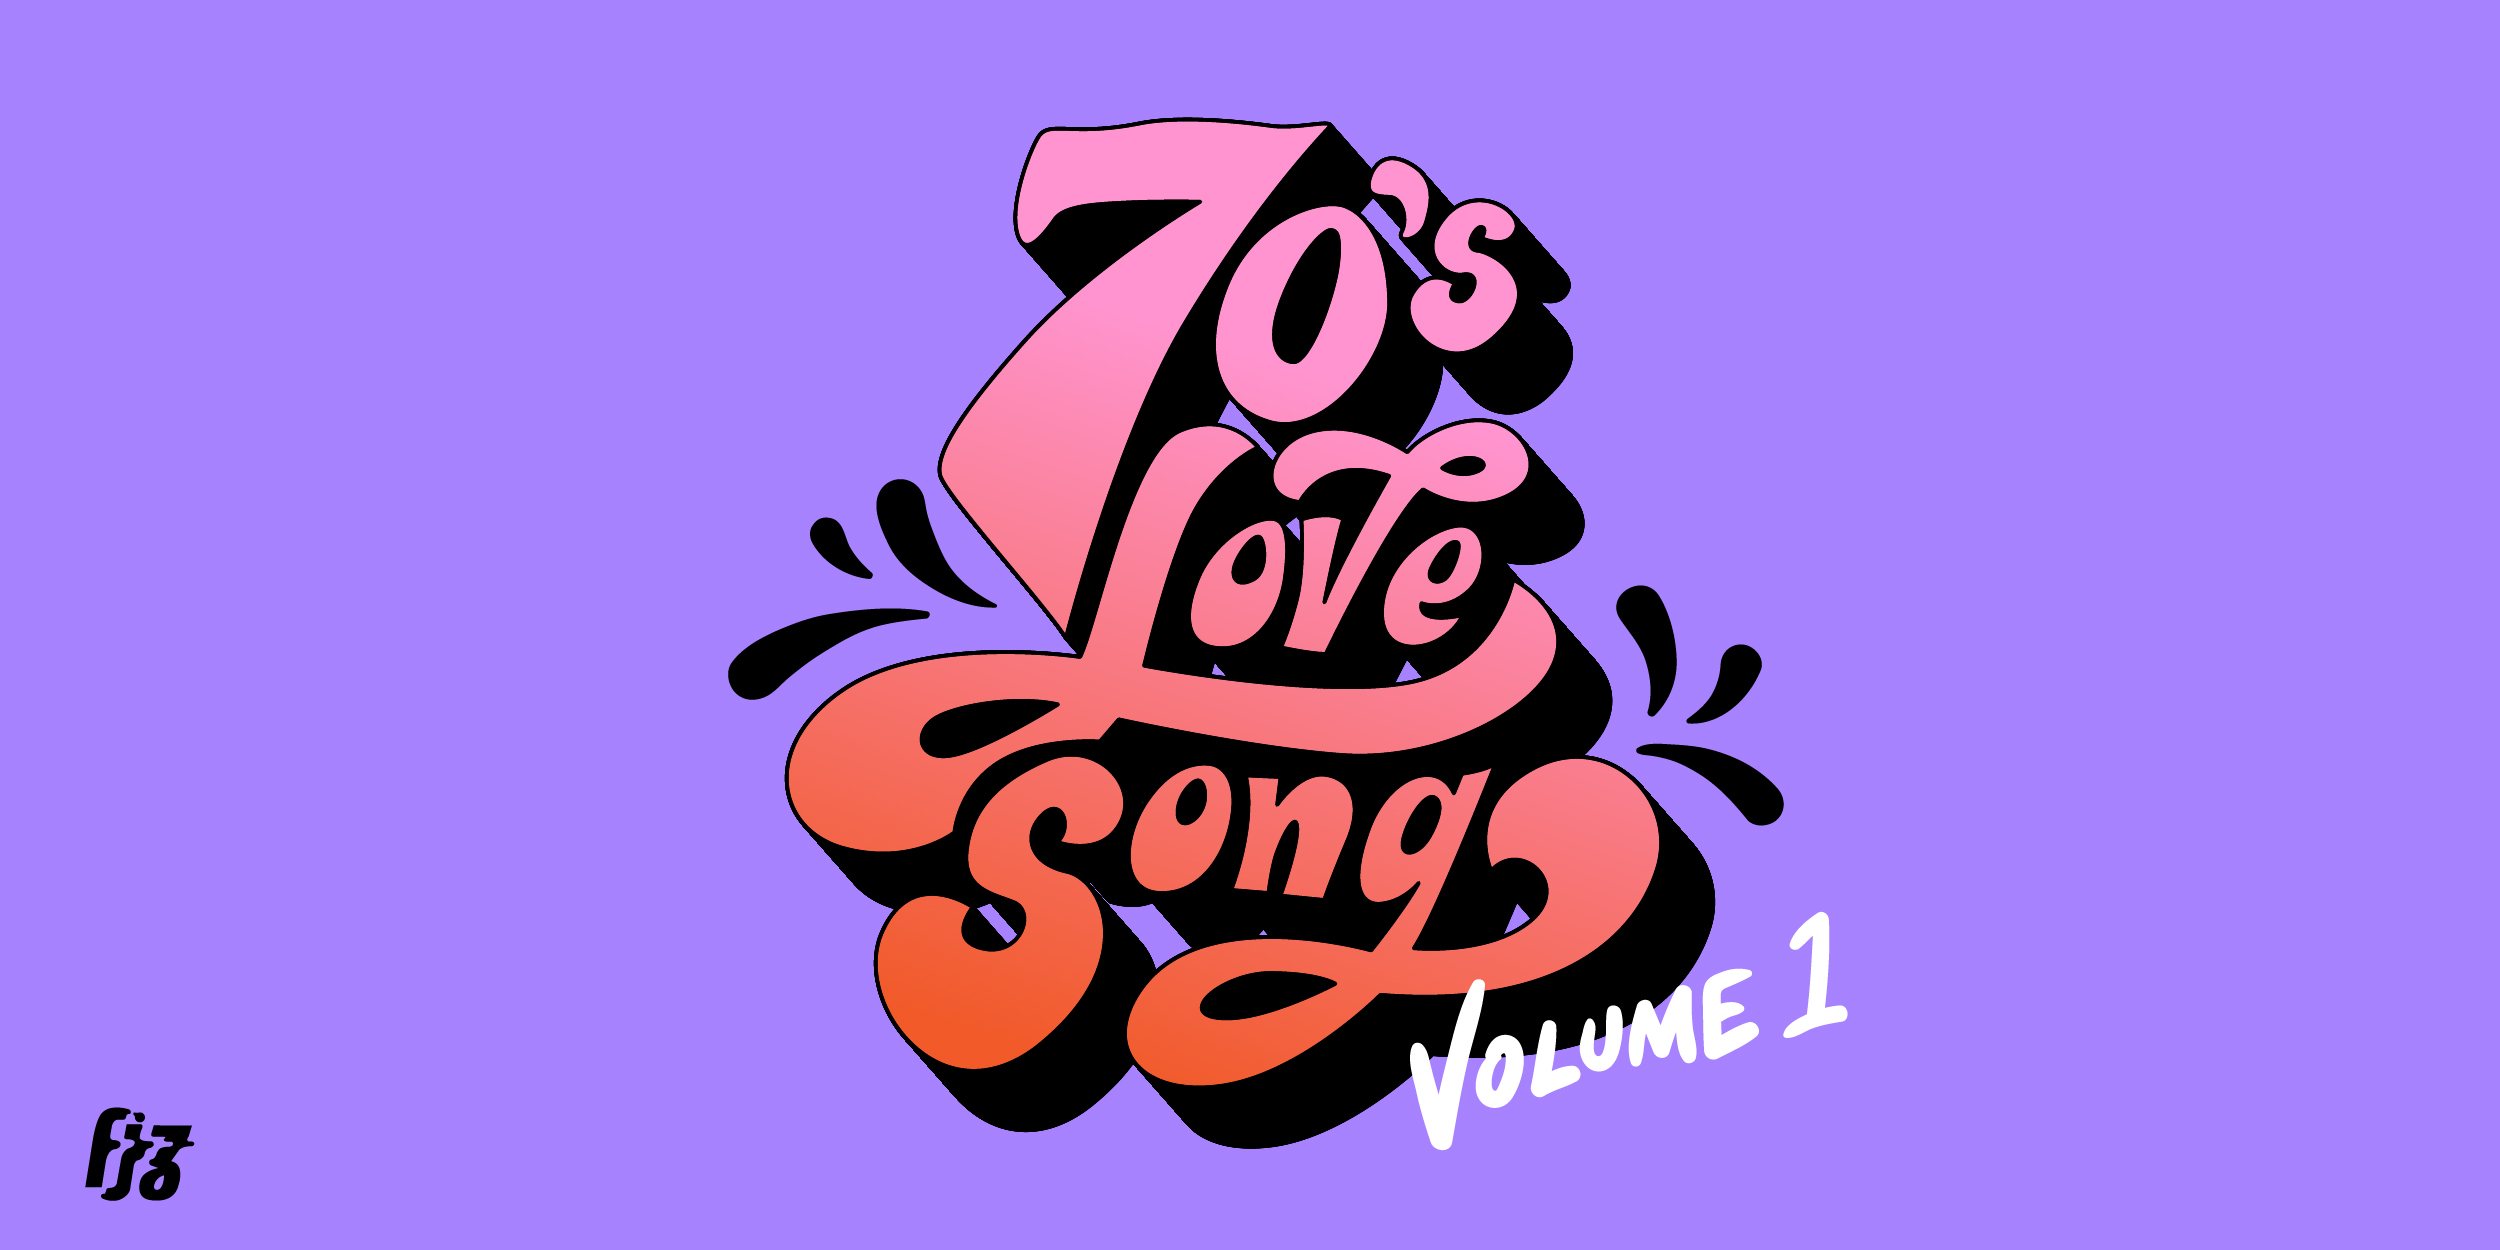 70s-love-songs-vol-1